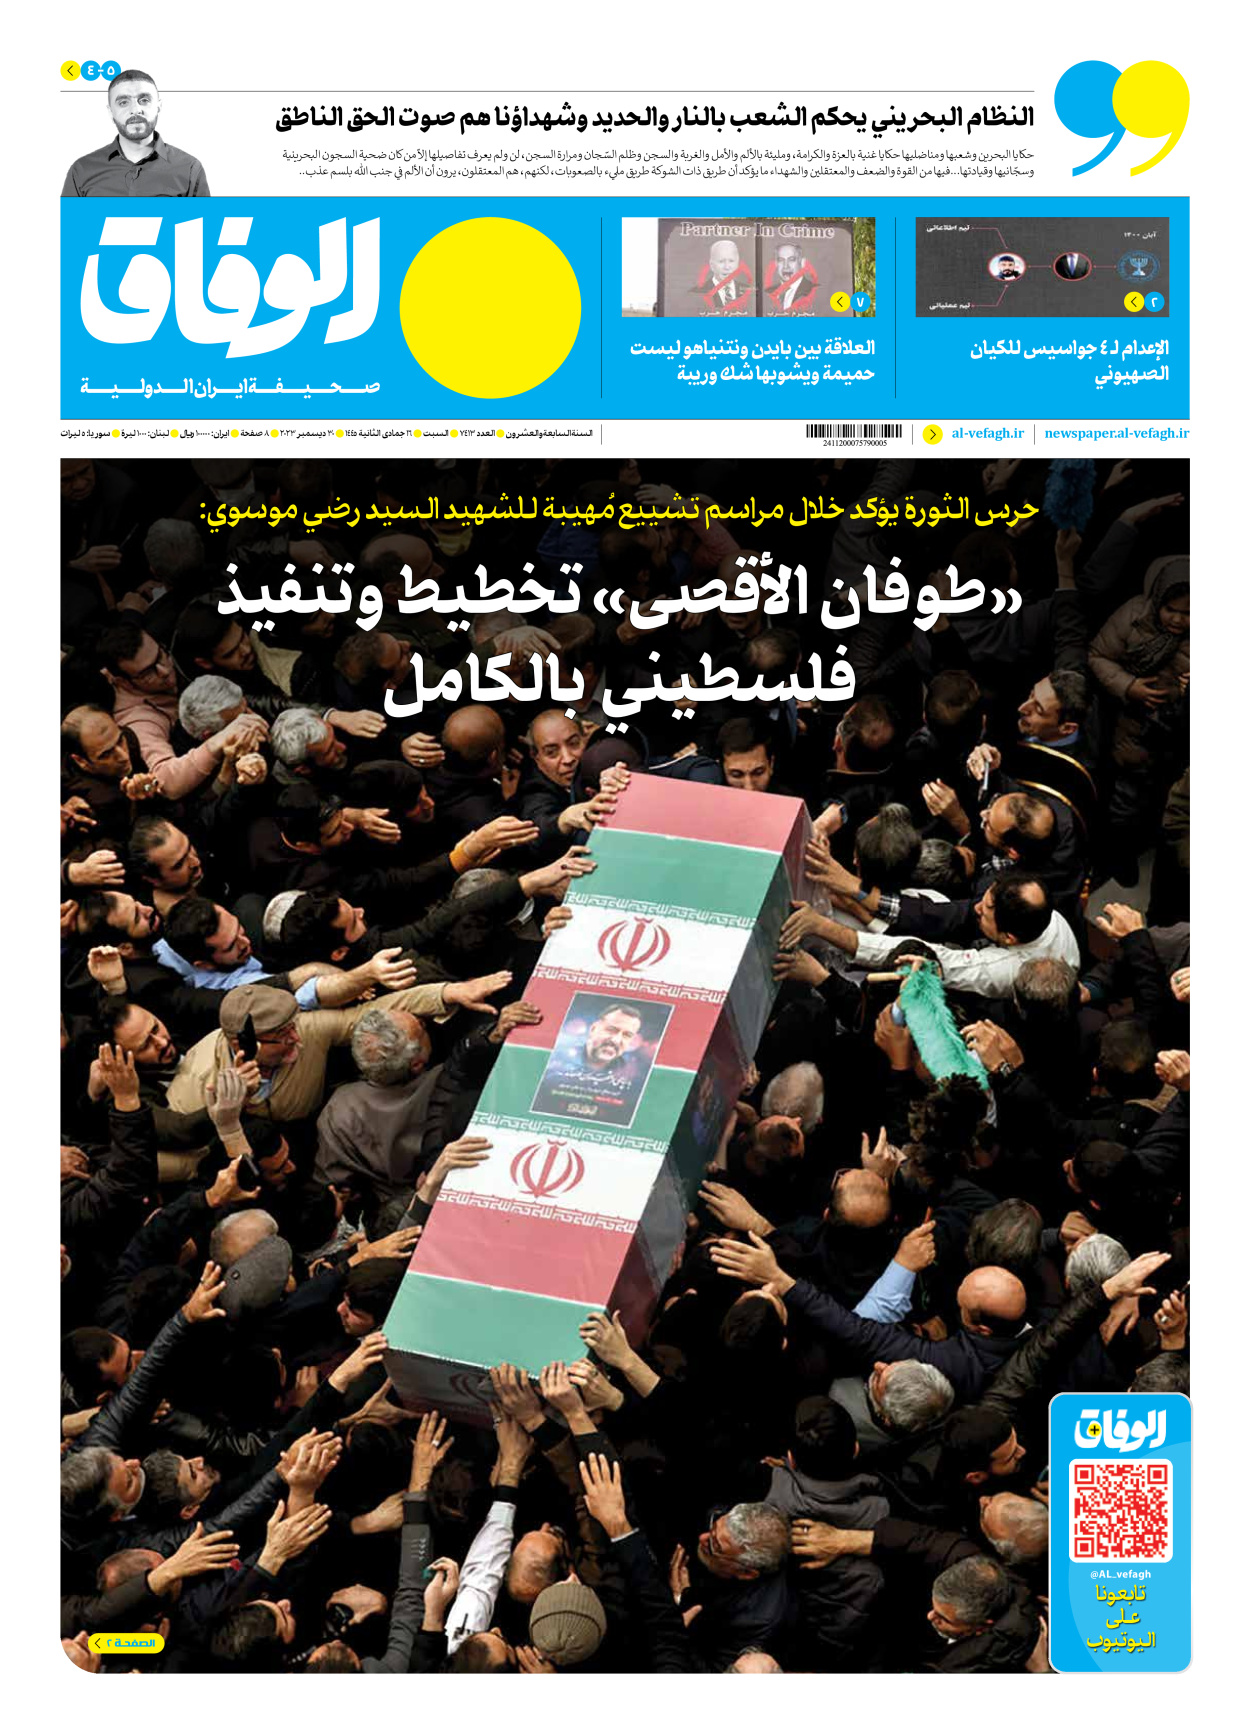 صحیفة ایران الدولیة الوفاق - العدد سبعة آلاف وأربعمائة وثلاثة عشر - ٣٠ ديسمبر ٢٠٢٣ - الصفحة ۱